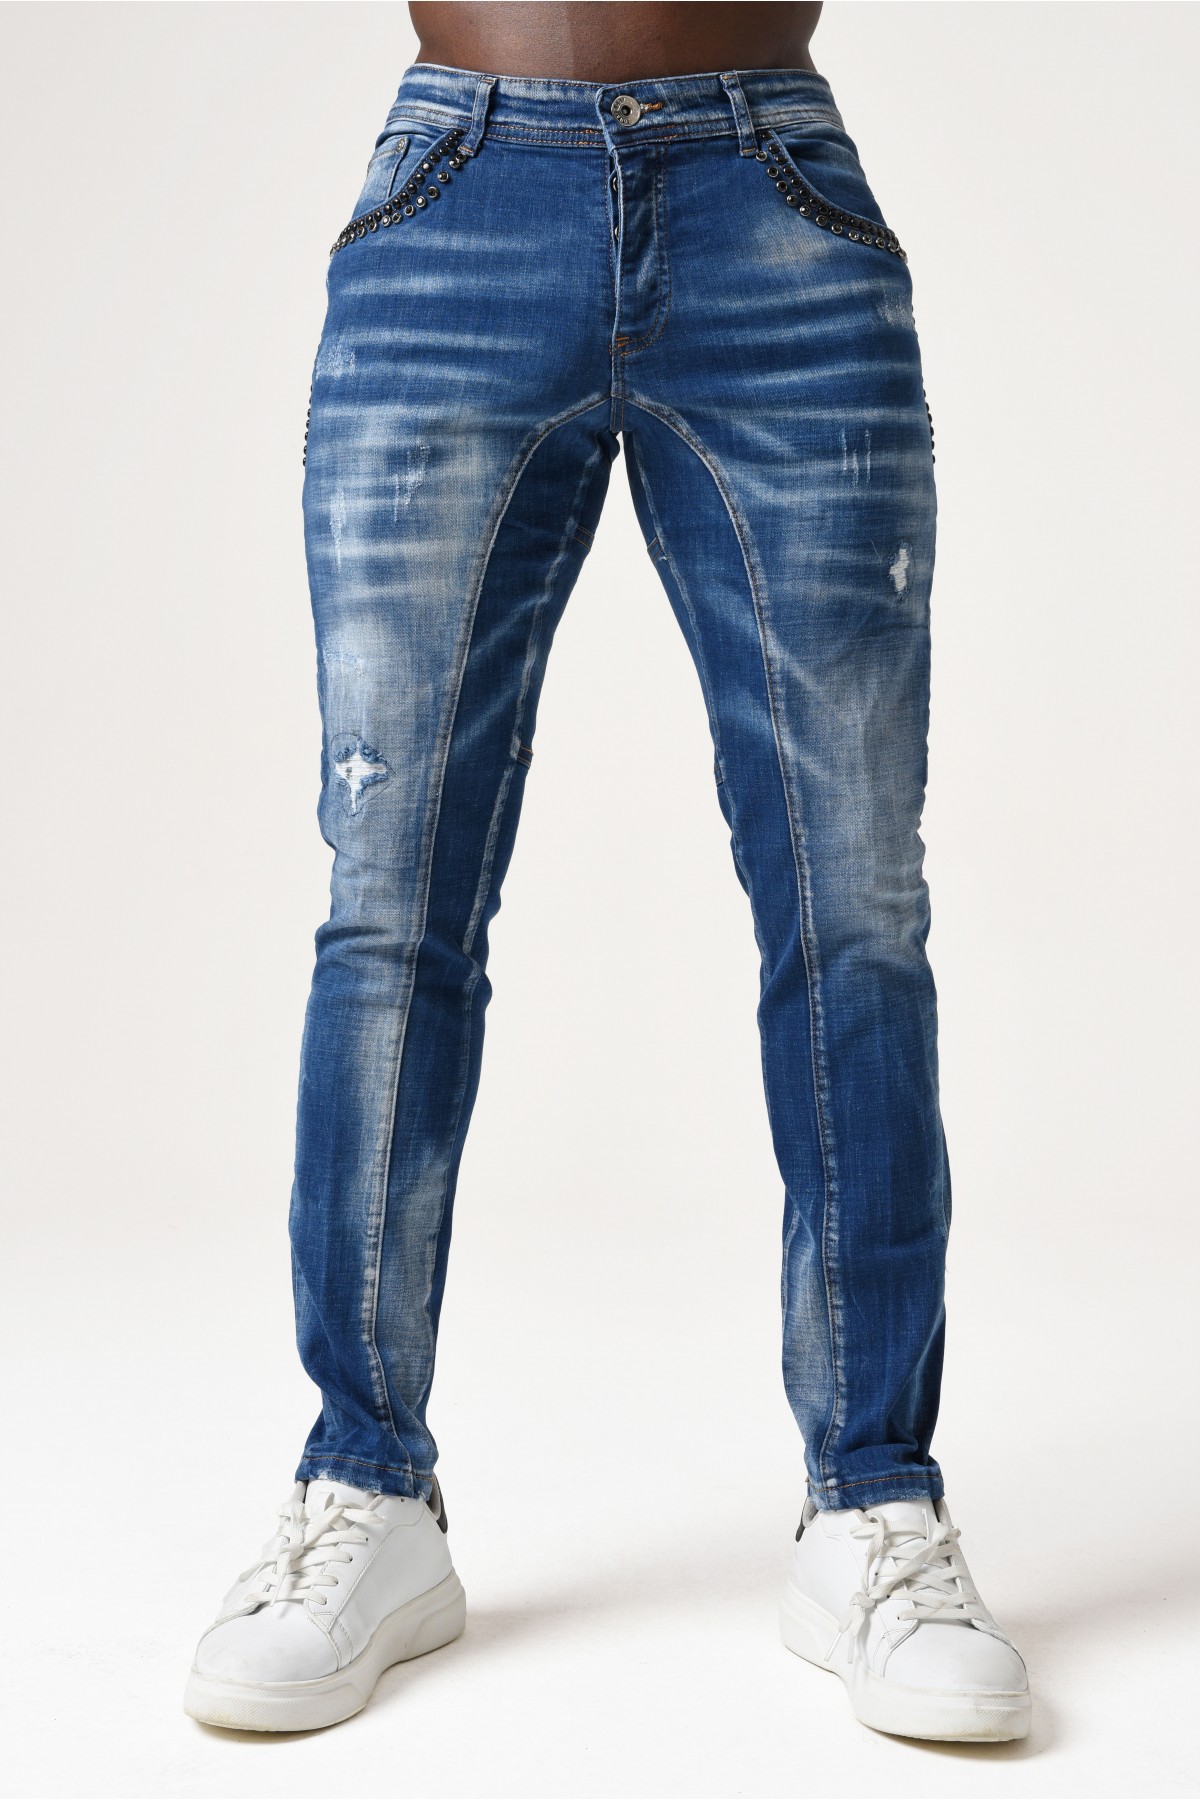 Erkek Denim Pantolon - Parçalı Taşlı - Açık Mavi